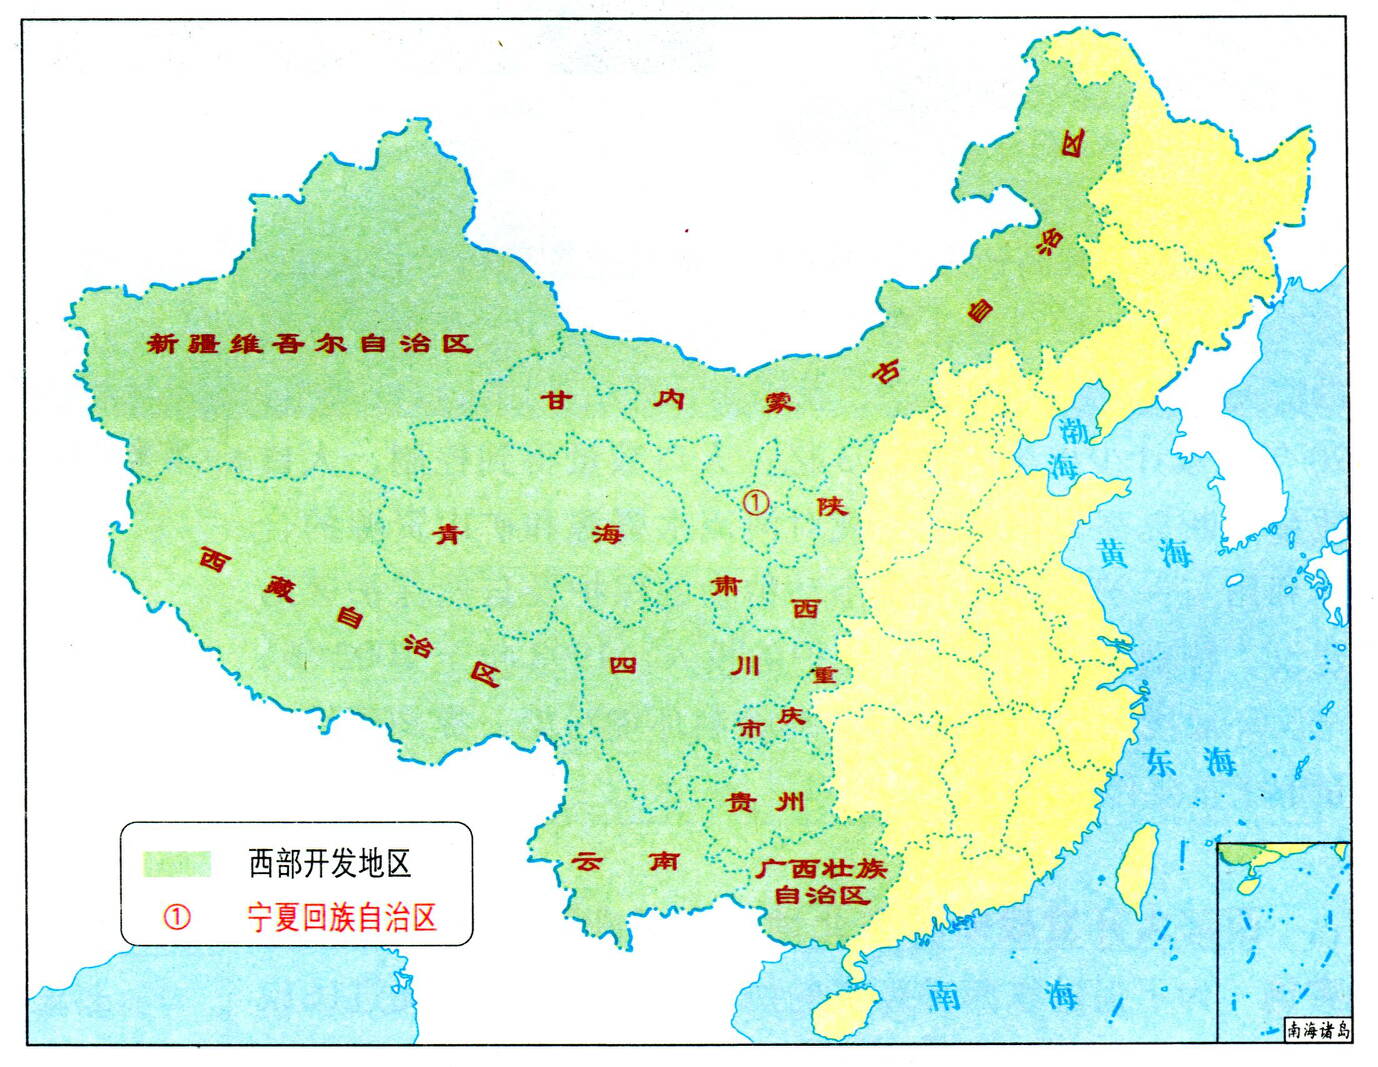 中国西部地区是在哪里,占全国总面积71%,人口